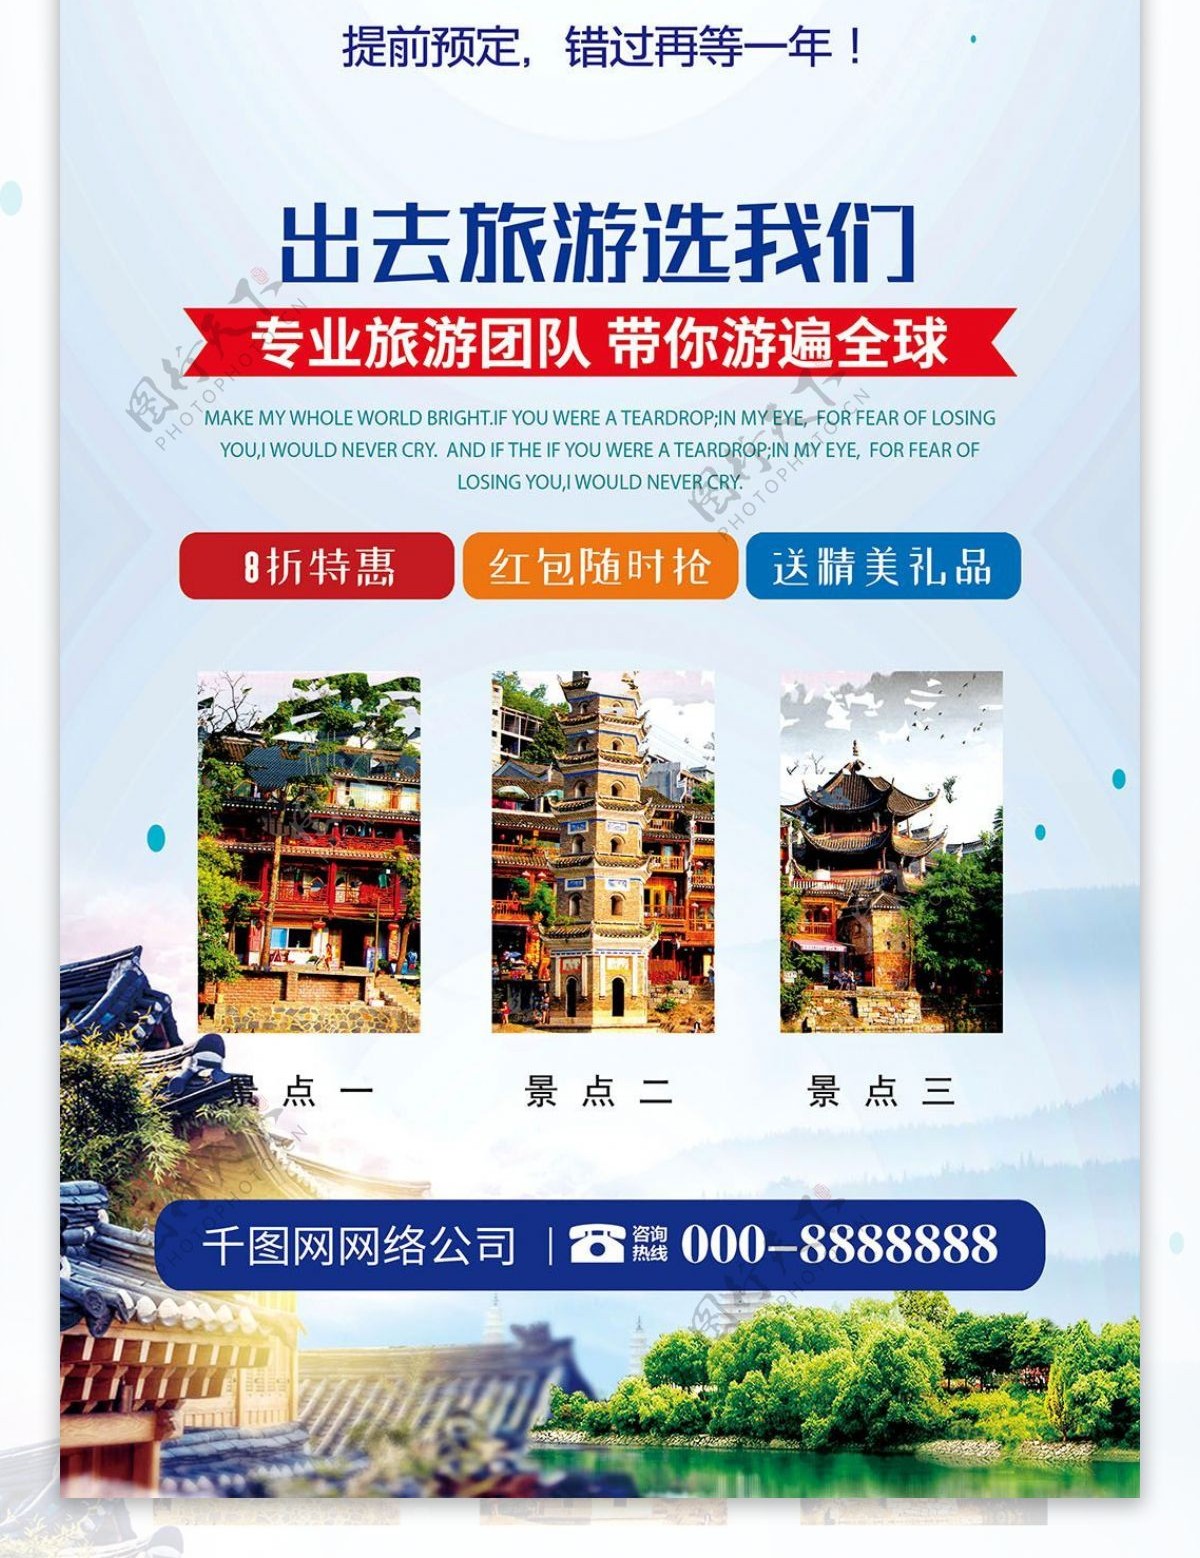 中国风凤凰古城旅行社宣传旅游展架